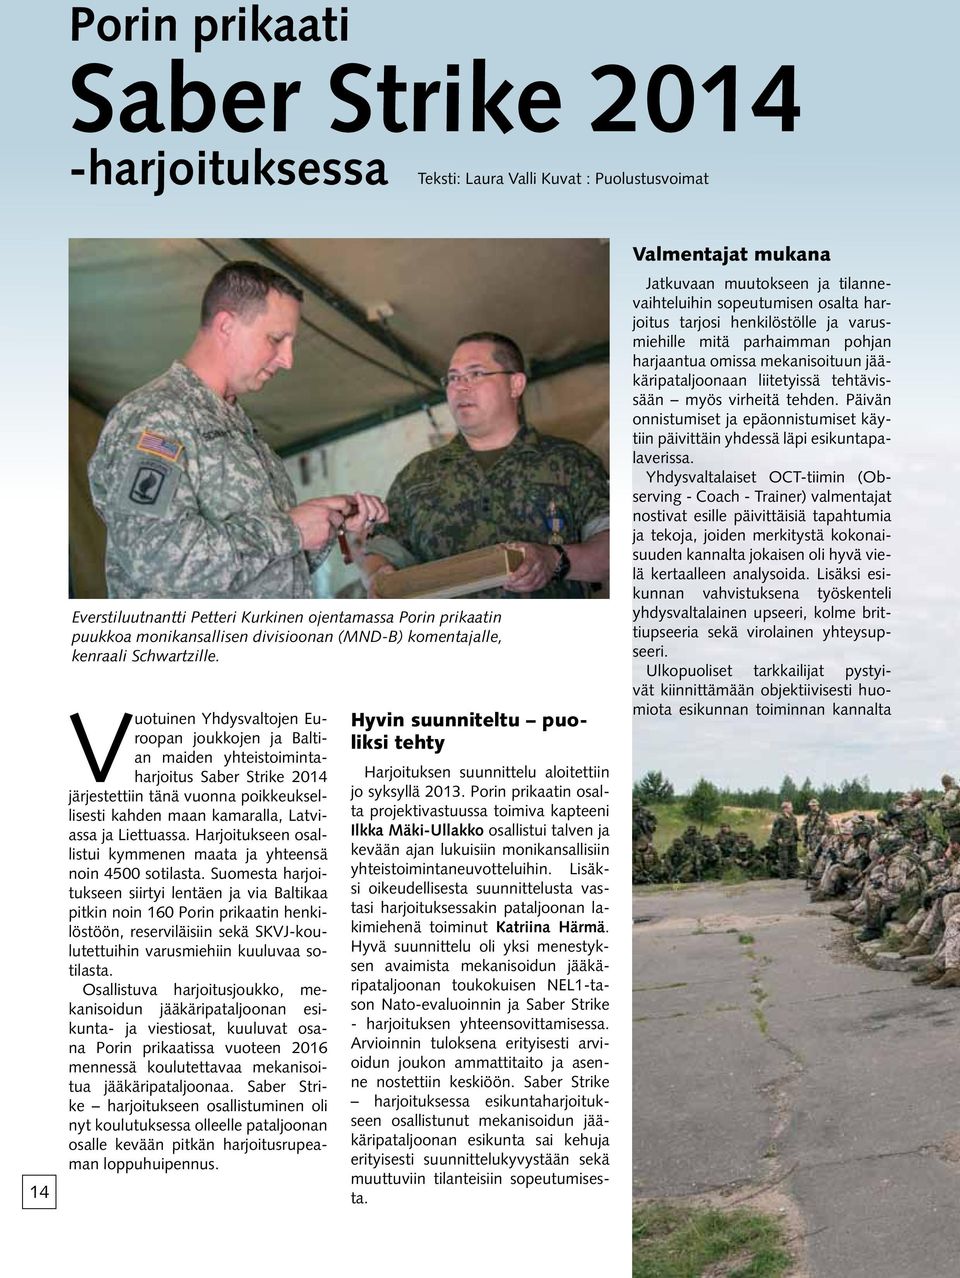 Vuotuinen Yhdysvaltojen Euroopan joukkojen ja Baltian maiden yhteistoimintaharjoitus Saber Strike 2014 järjestettiin tänä vuonna poikkeuksellisesti kahden maan kamaralla, Latviassa ja Liettuassa.